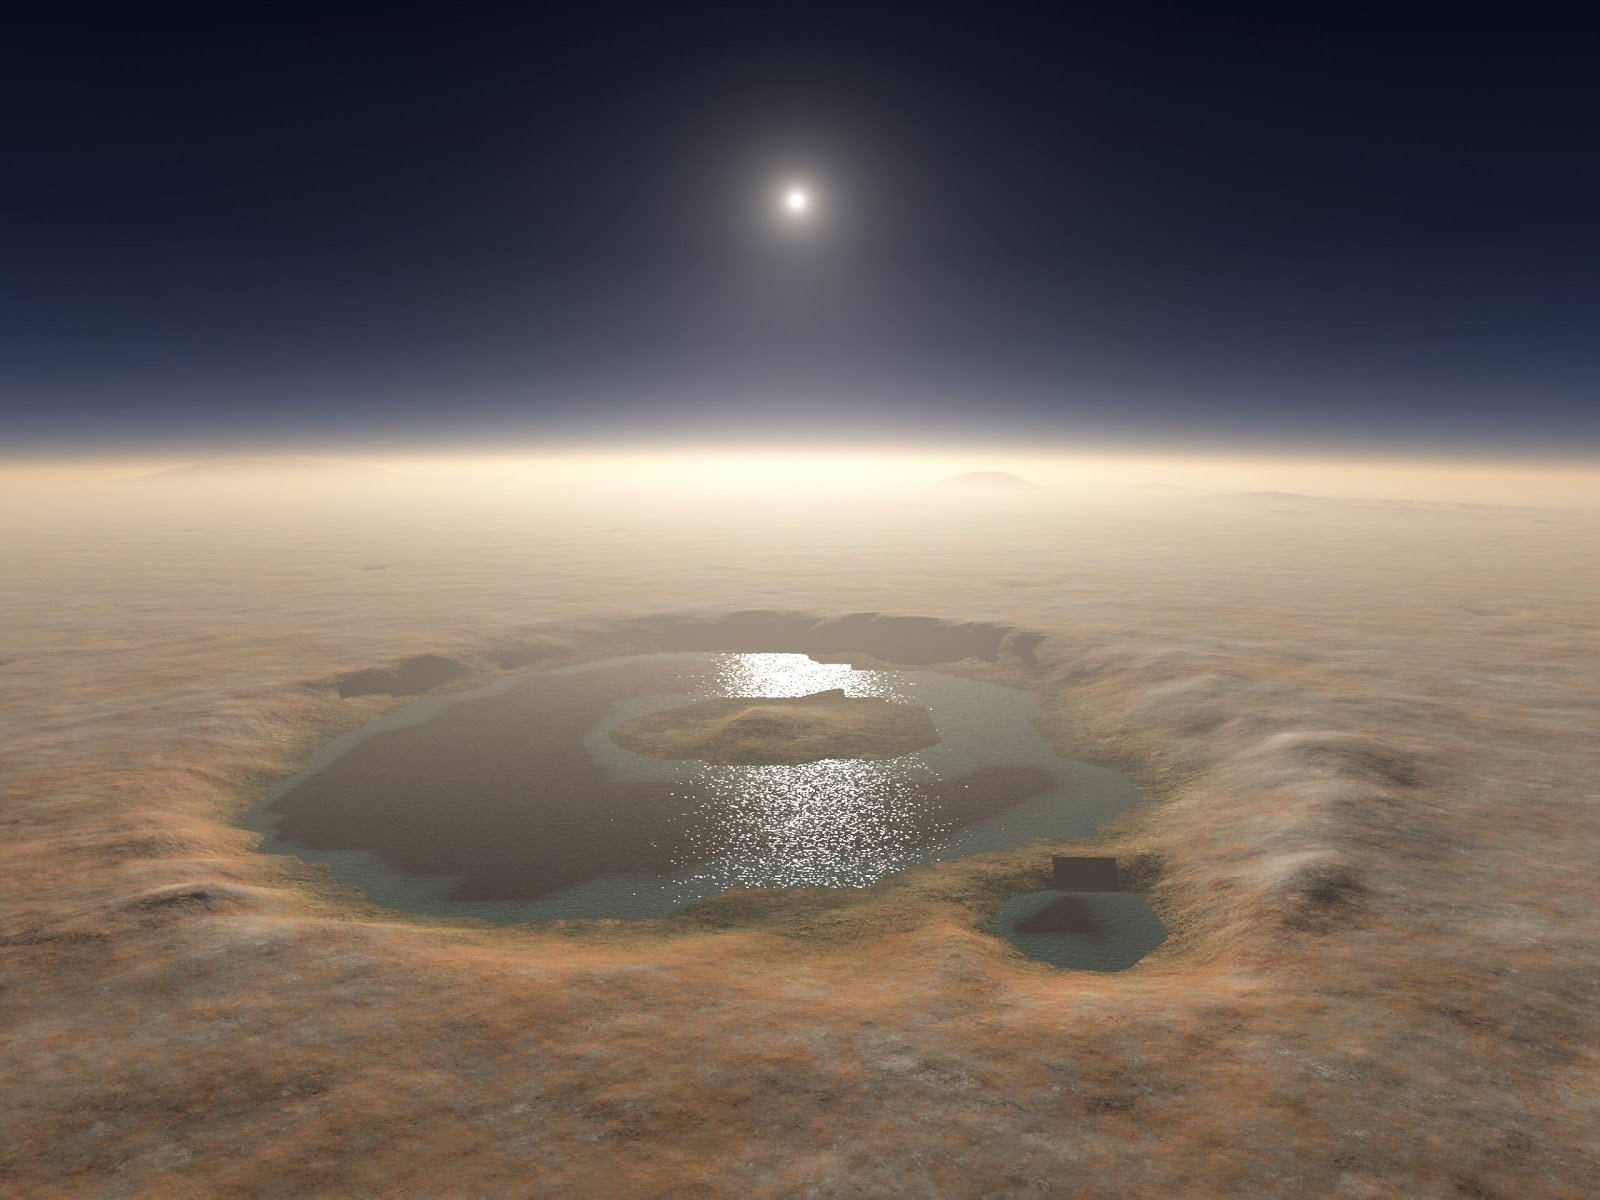  Lacuri subterane cu apă lichidă, descoperite pe Marte